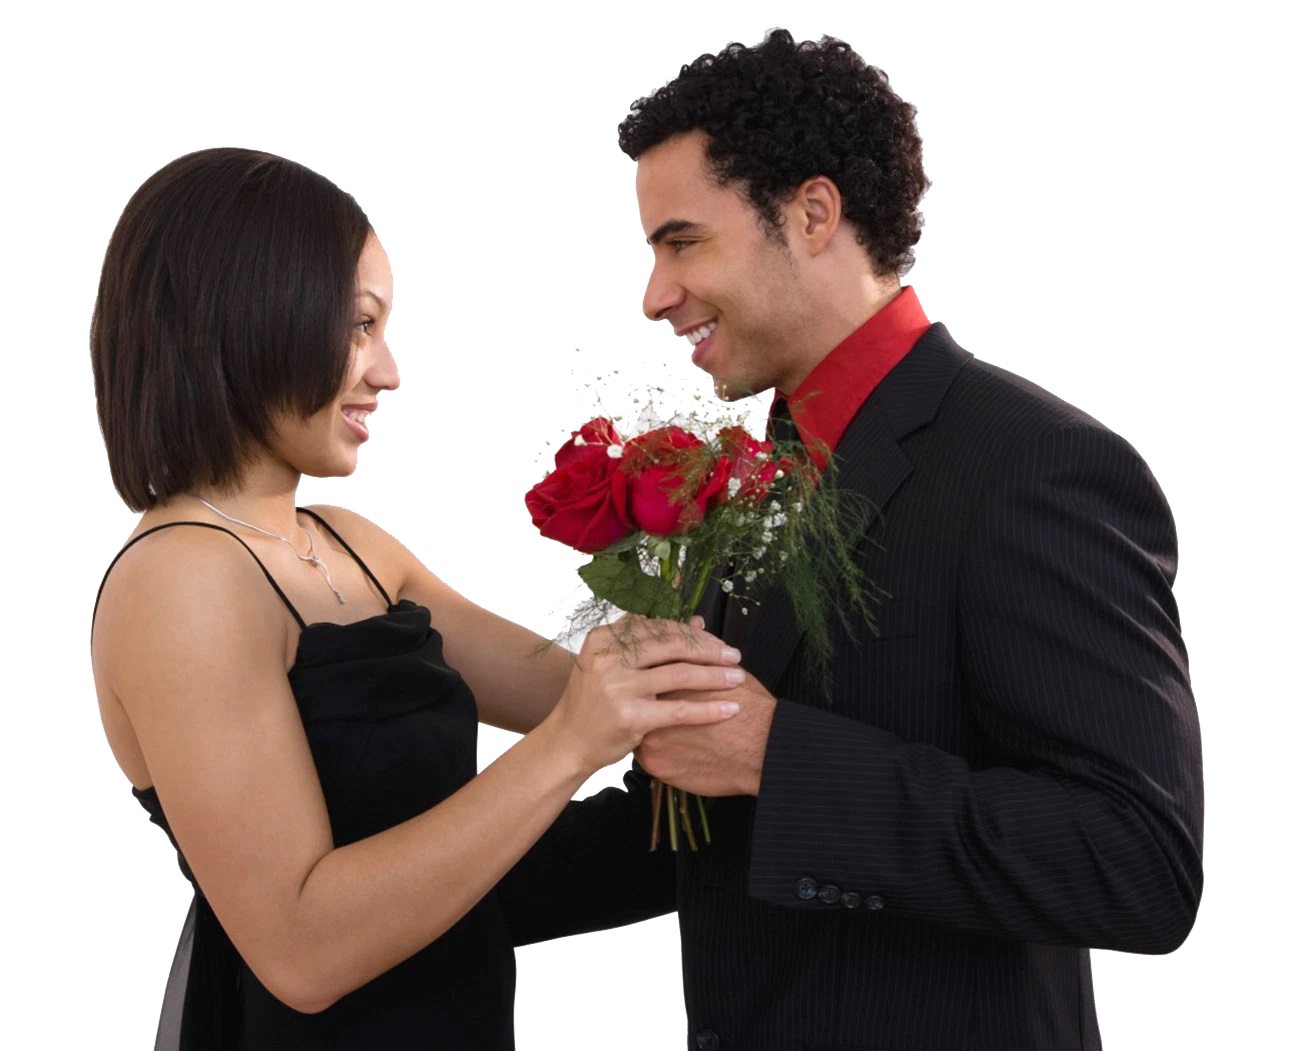 Сонник муж подарил. Дарит цветы. Мужчина дарит цветы. Мужчина дарит букет цветов женщине. Мужчина дарит цветы девушке.